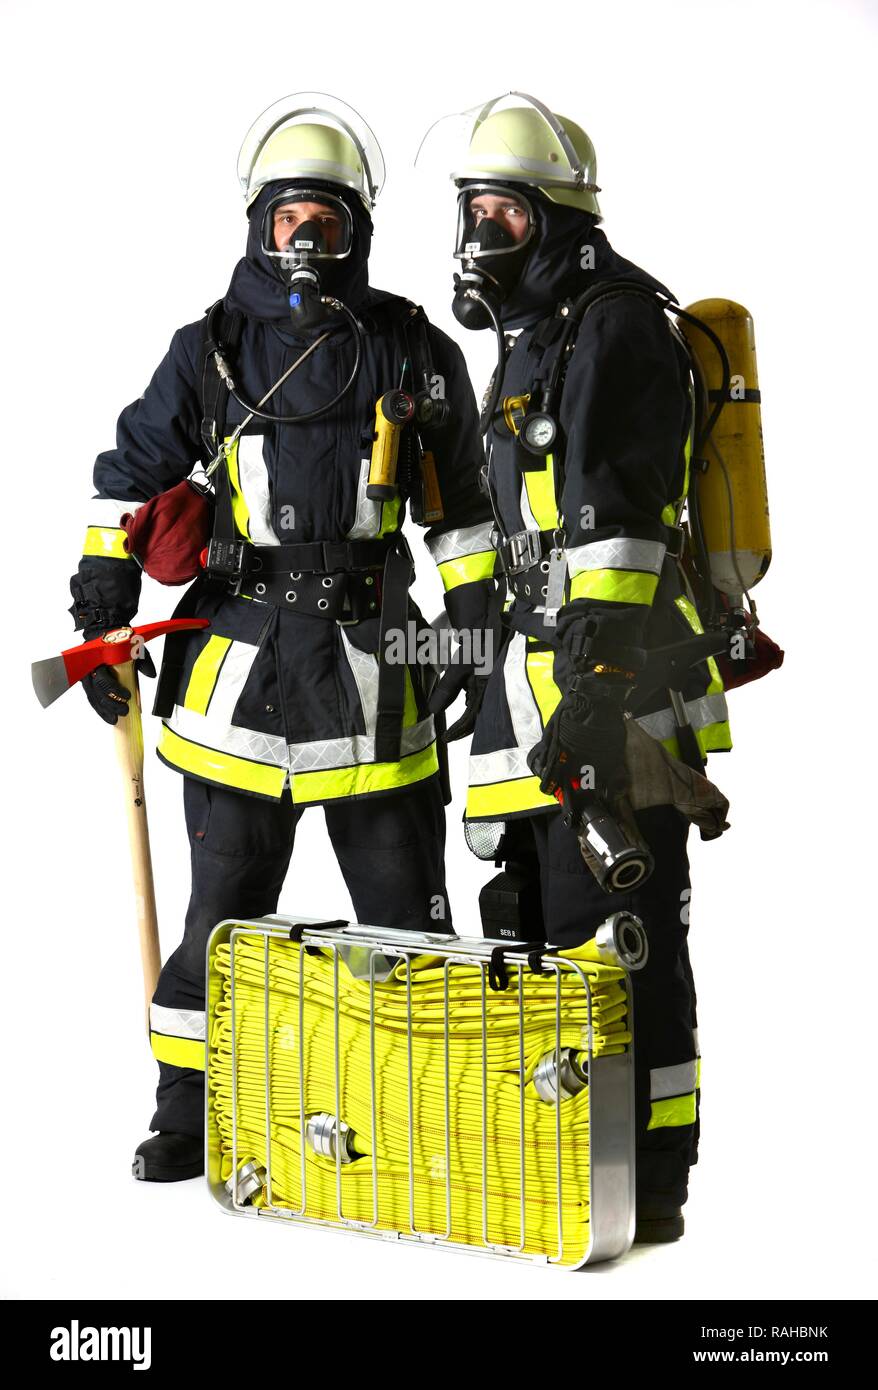 Les pompiers, l'escouade d'intervention pour la lutte contre les incendies, portant des vêtements en Nomex, un casque avec une visière, une hache d'incendie, Banque D'Images